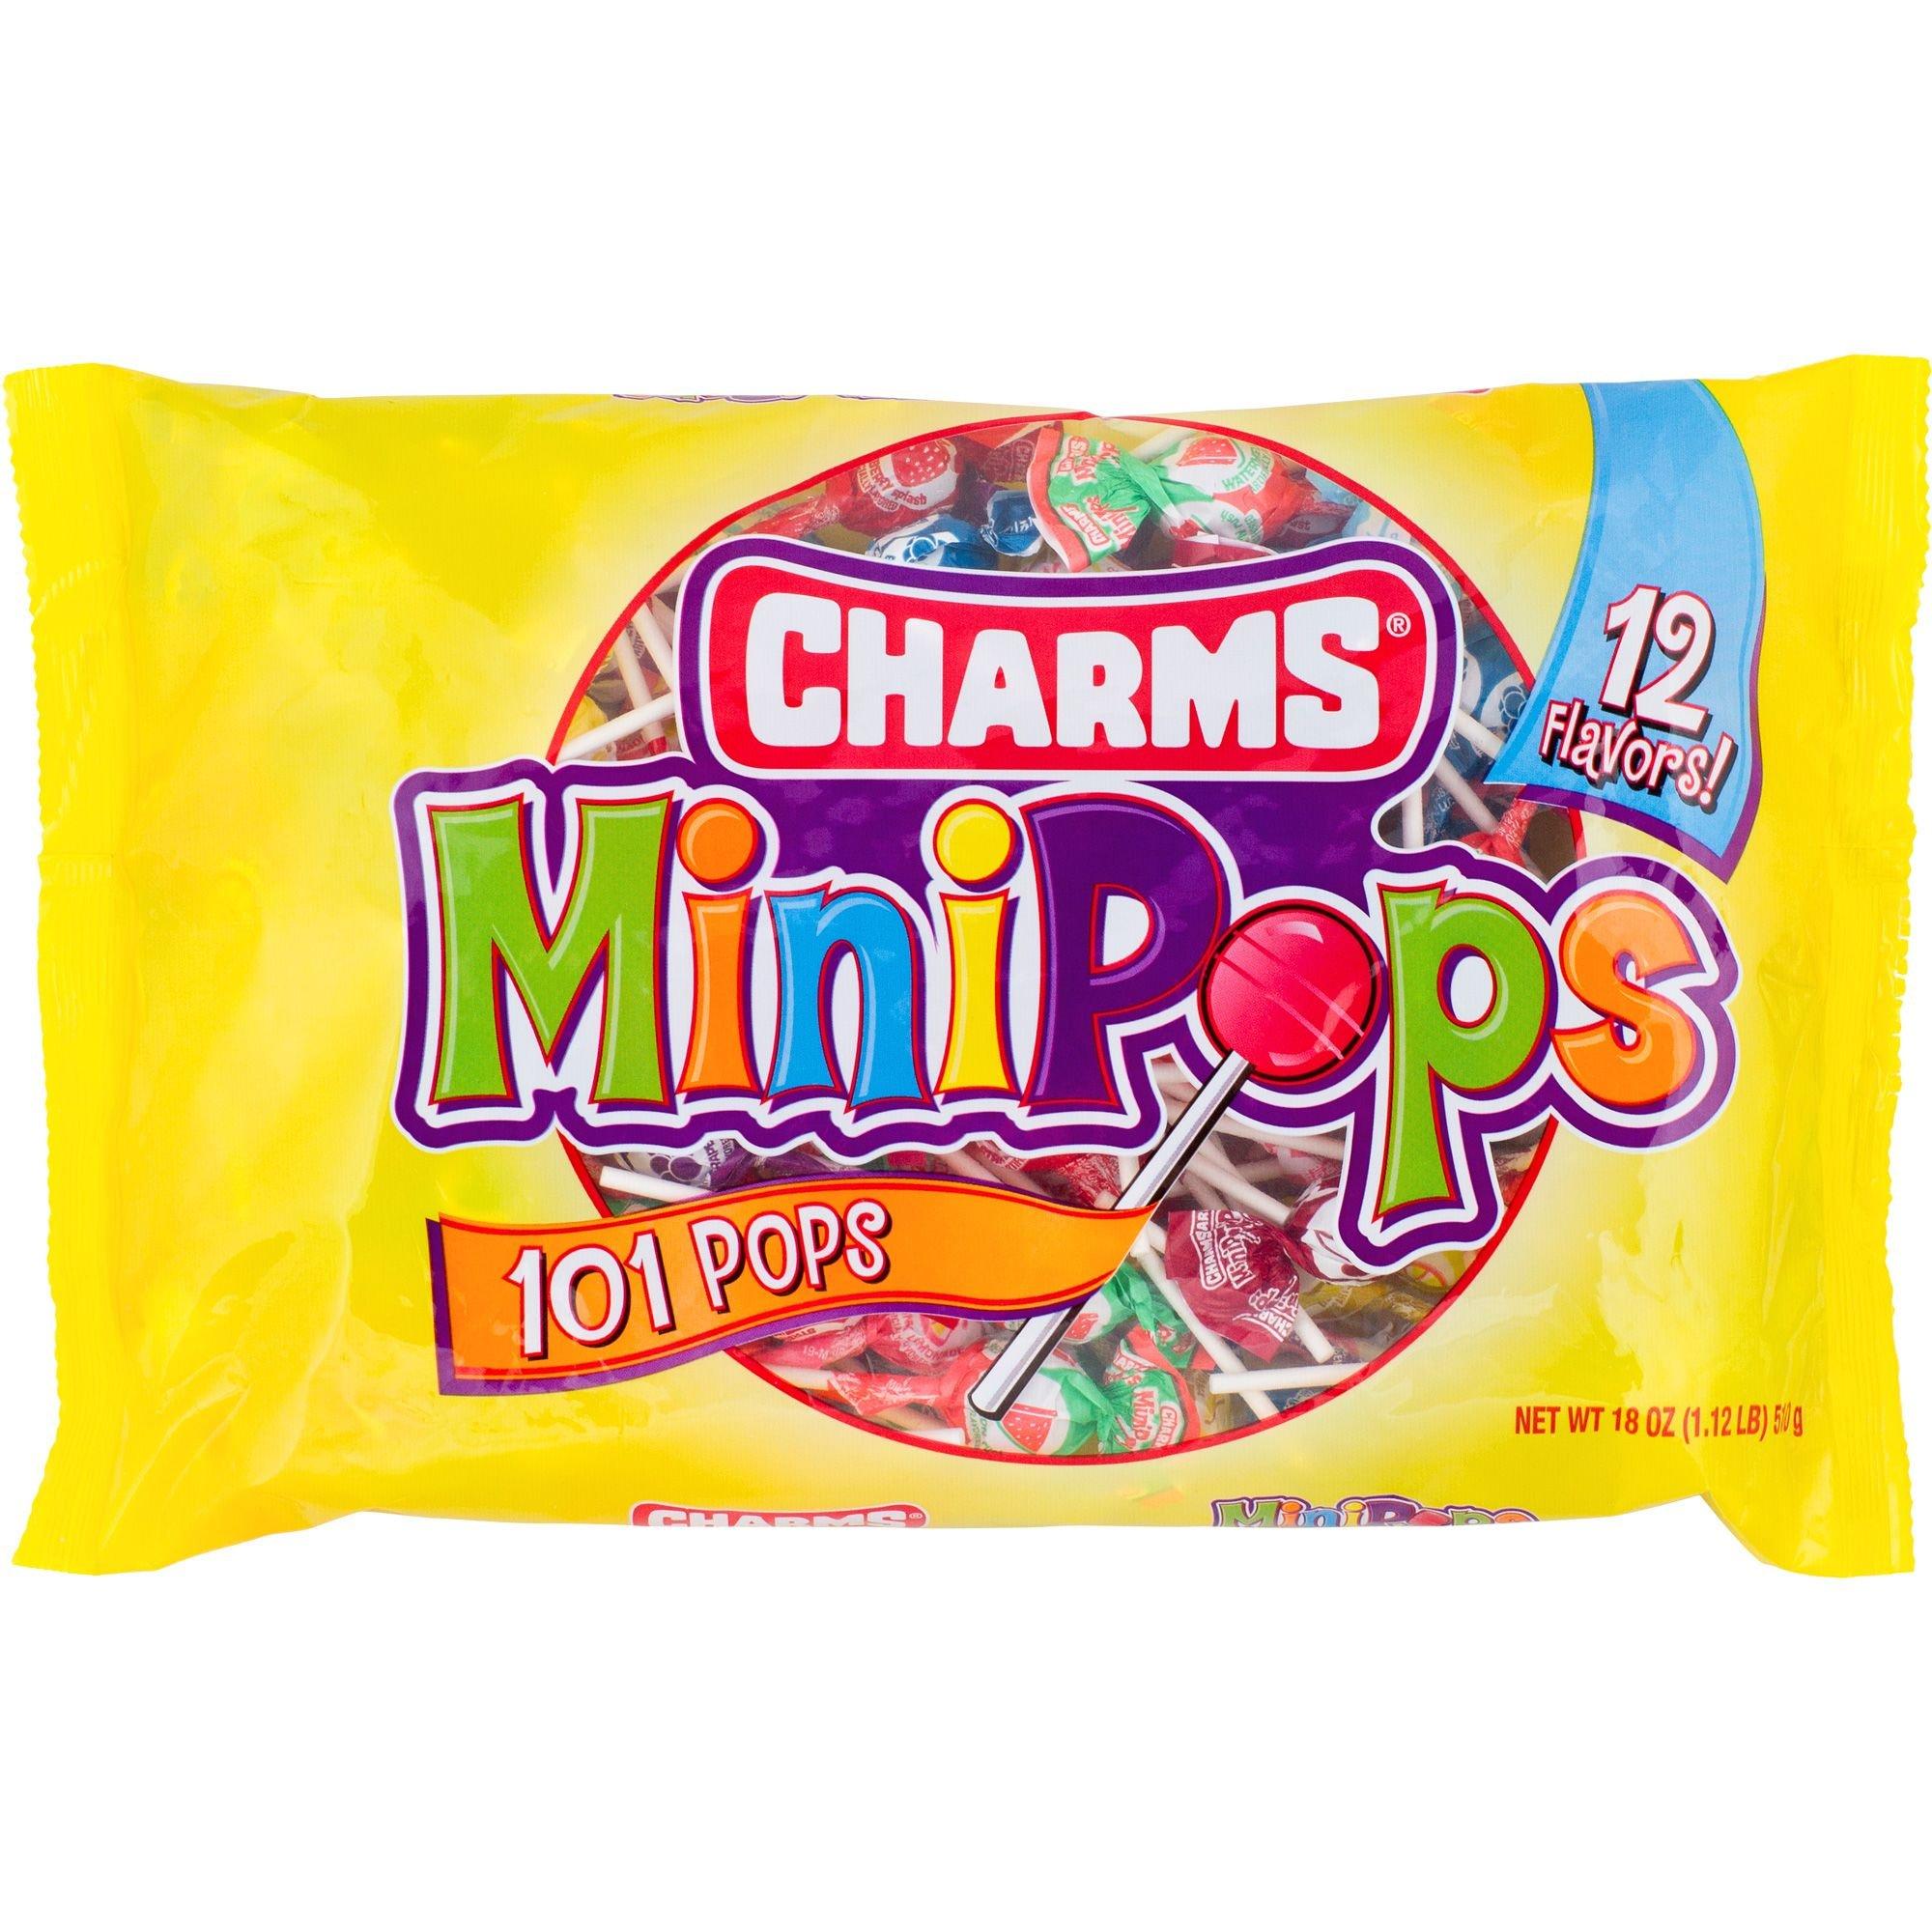 Mini Charms Pops 300-Count Lollipop Bags - 6ct